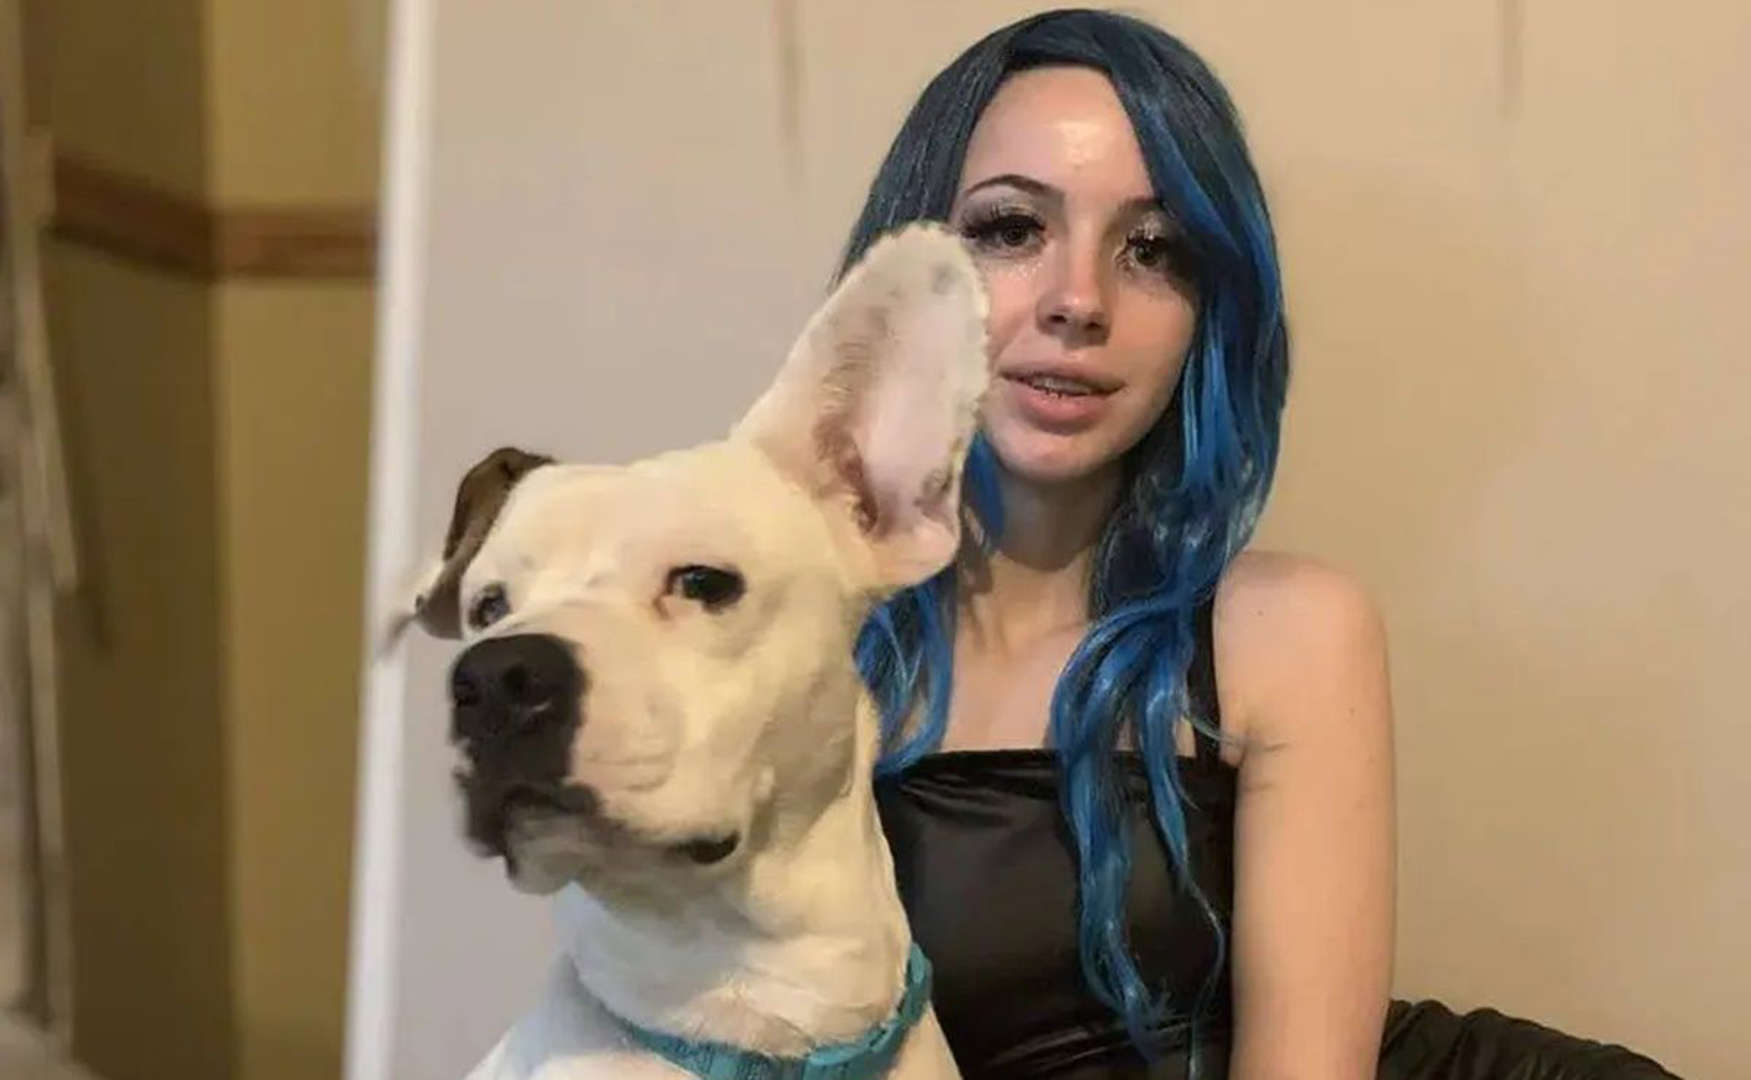 Mujer de 19 años es arrestada por tener sexo con un perro y grabarlo